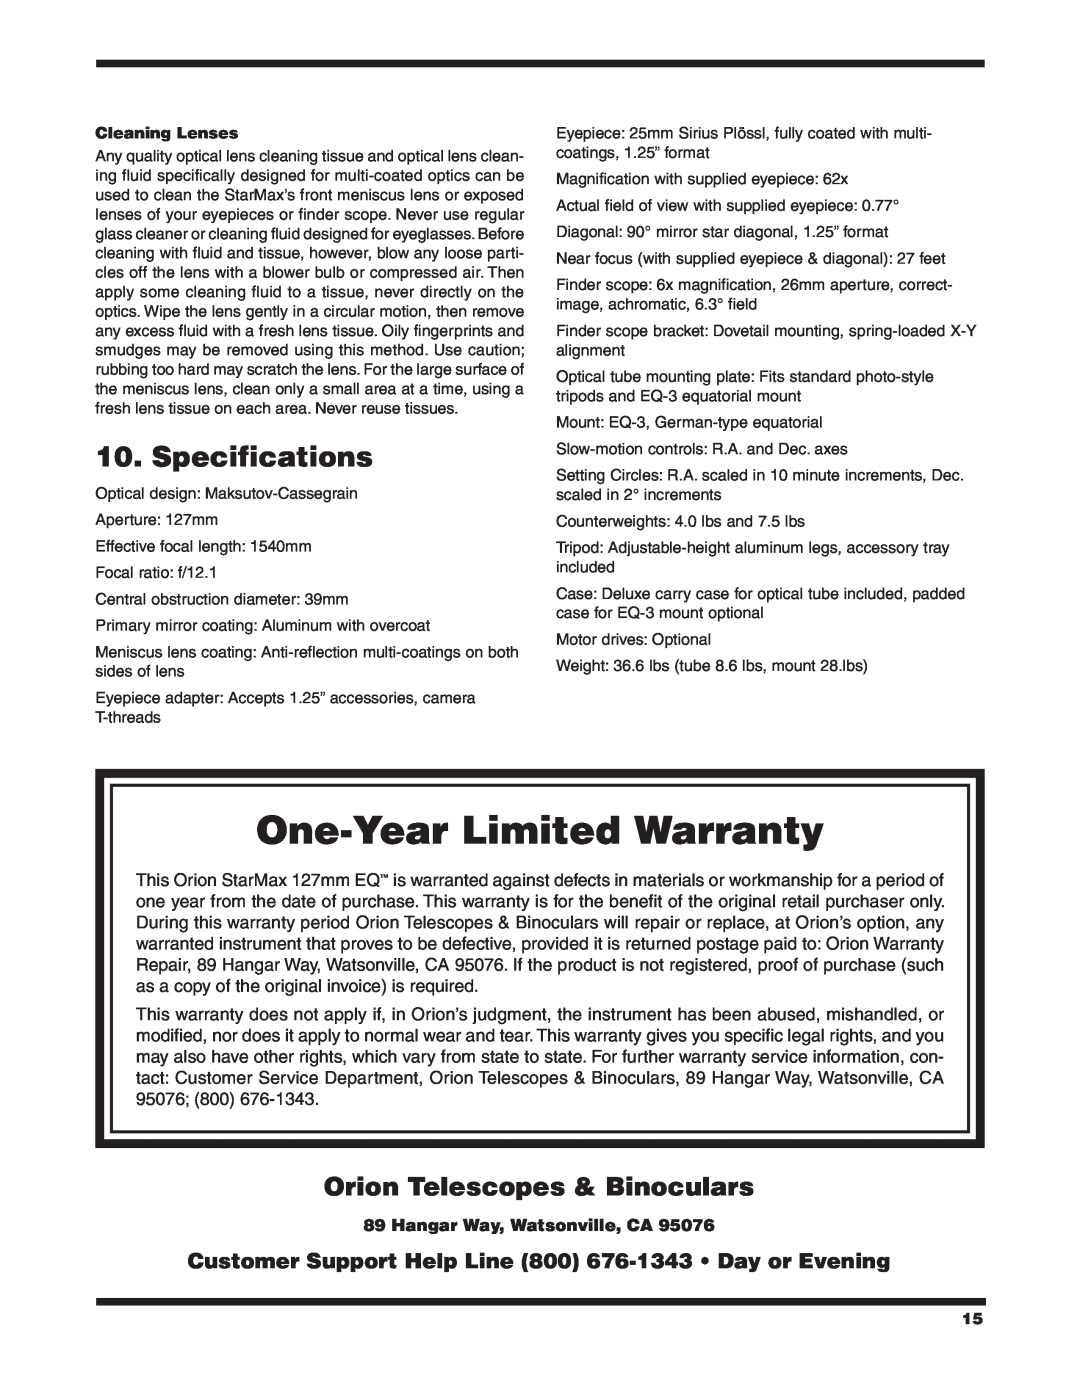 Orion 9826 Specifications, Orion Telescopes & Binoculars, Hangar Way, Watsonville, CA, One-Year Limited Warranty 